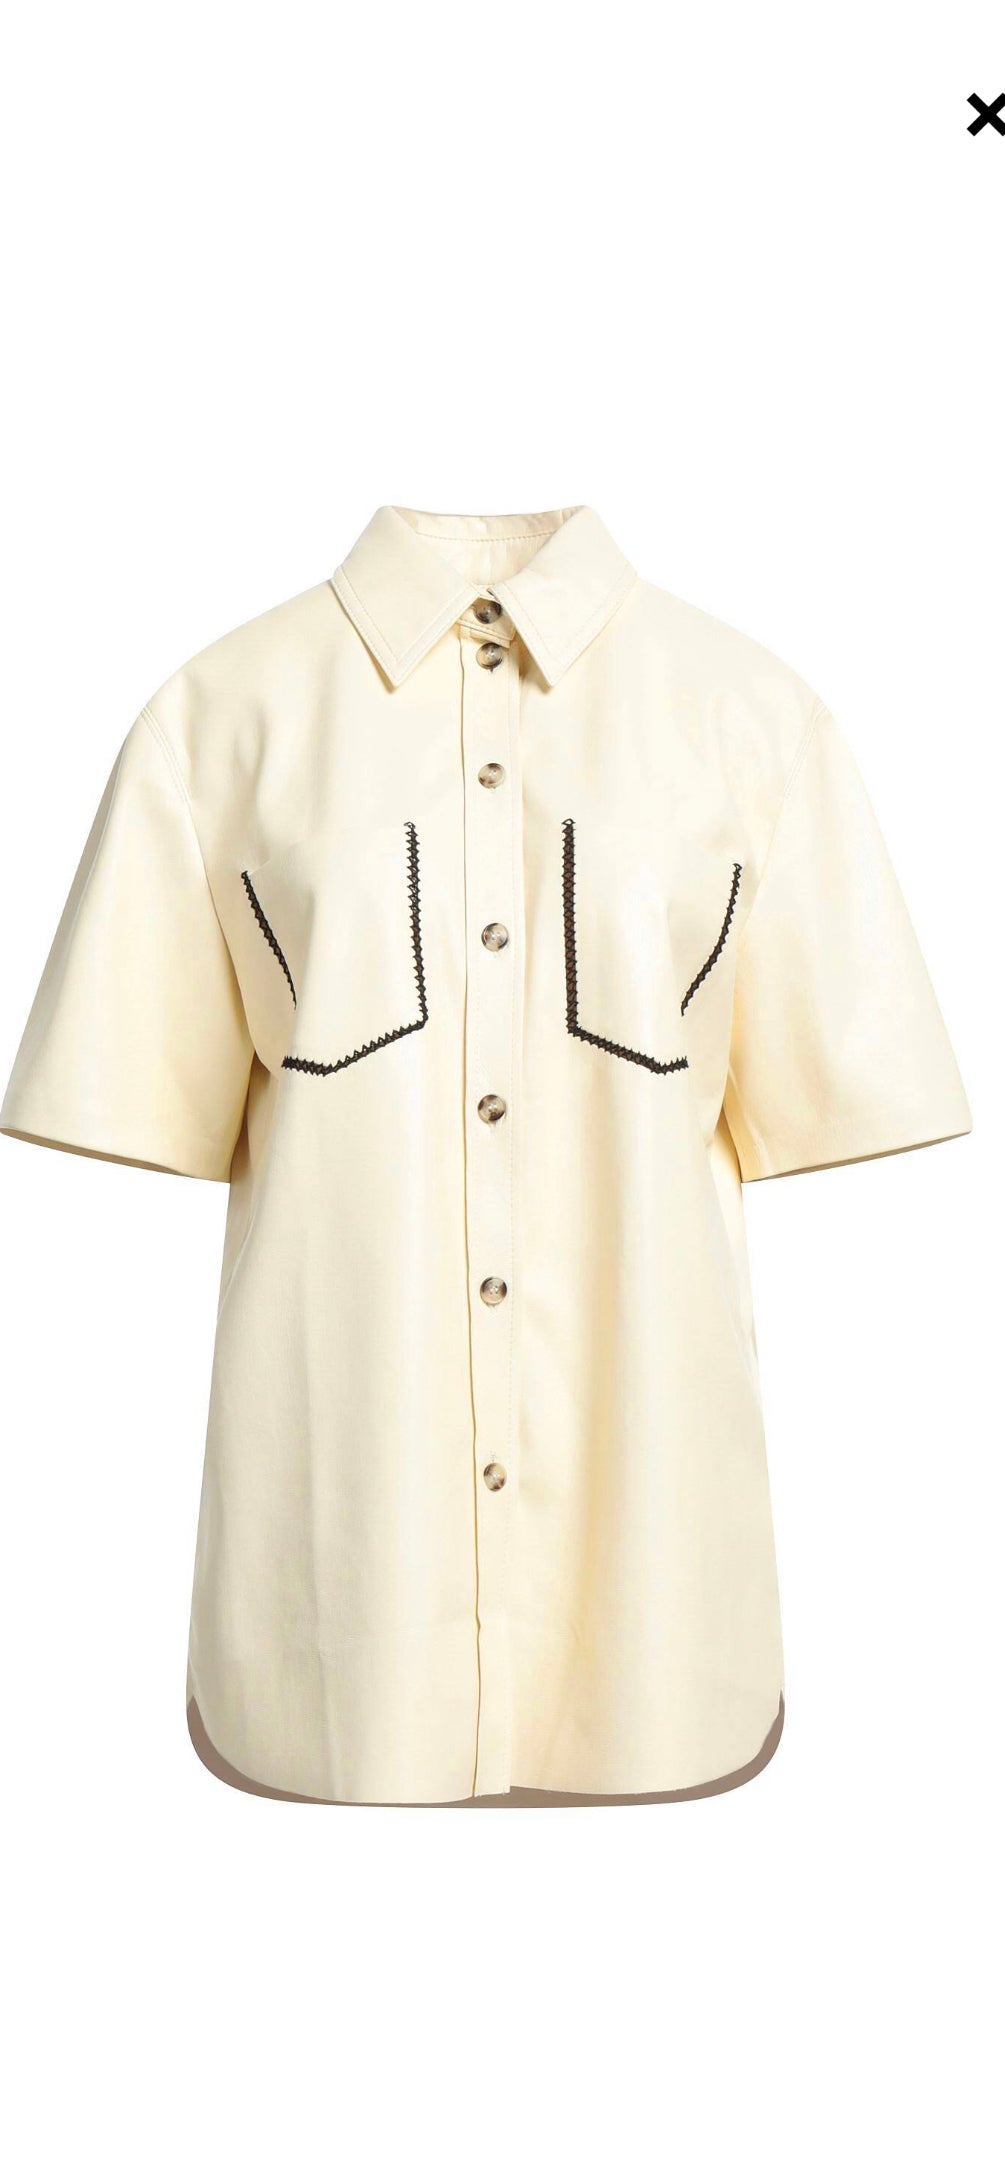 Vegan Leather Oversized Short Sleeve Shirt